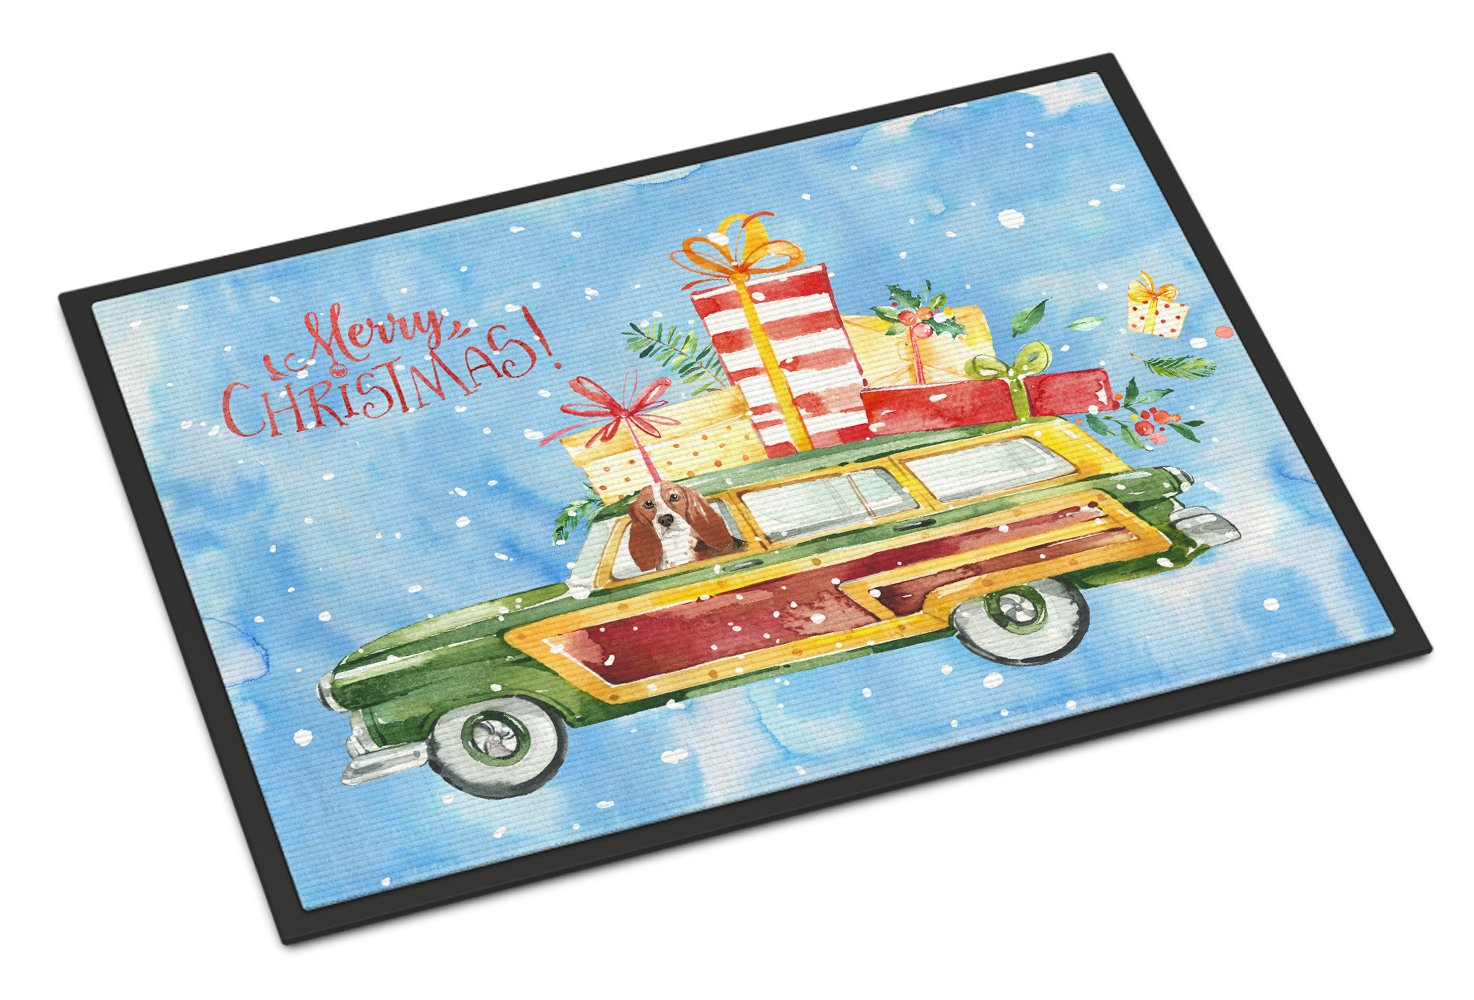 Merry Christmas Basset Hound Indoor or Outdoor Mat 24x36 CK2393JMAT by Caroline's Treasures